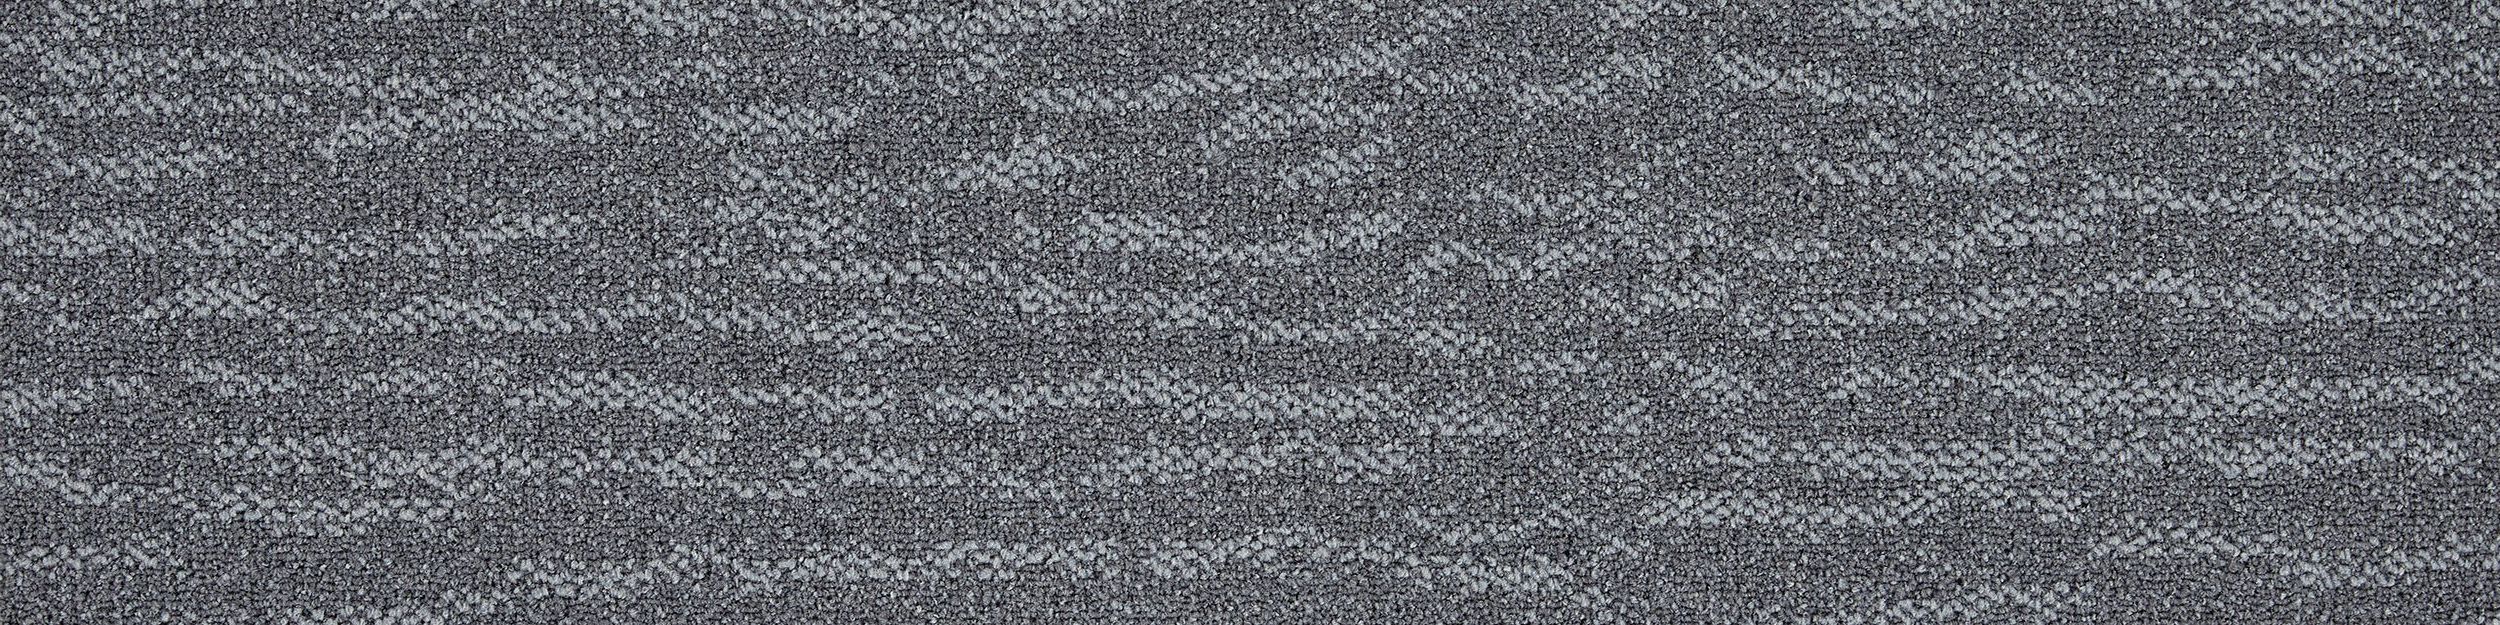 Works Fluid Carpet Tile In Concrete número de imagen 2